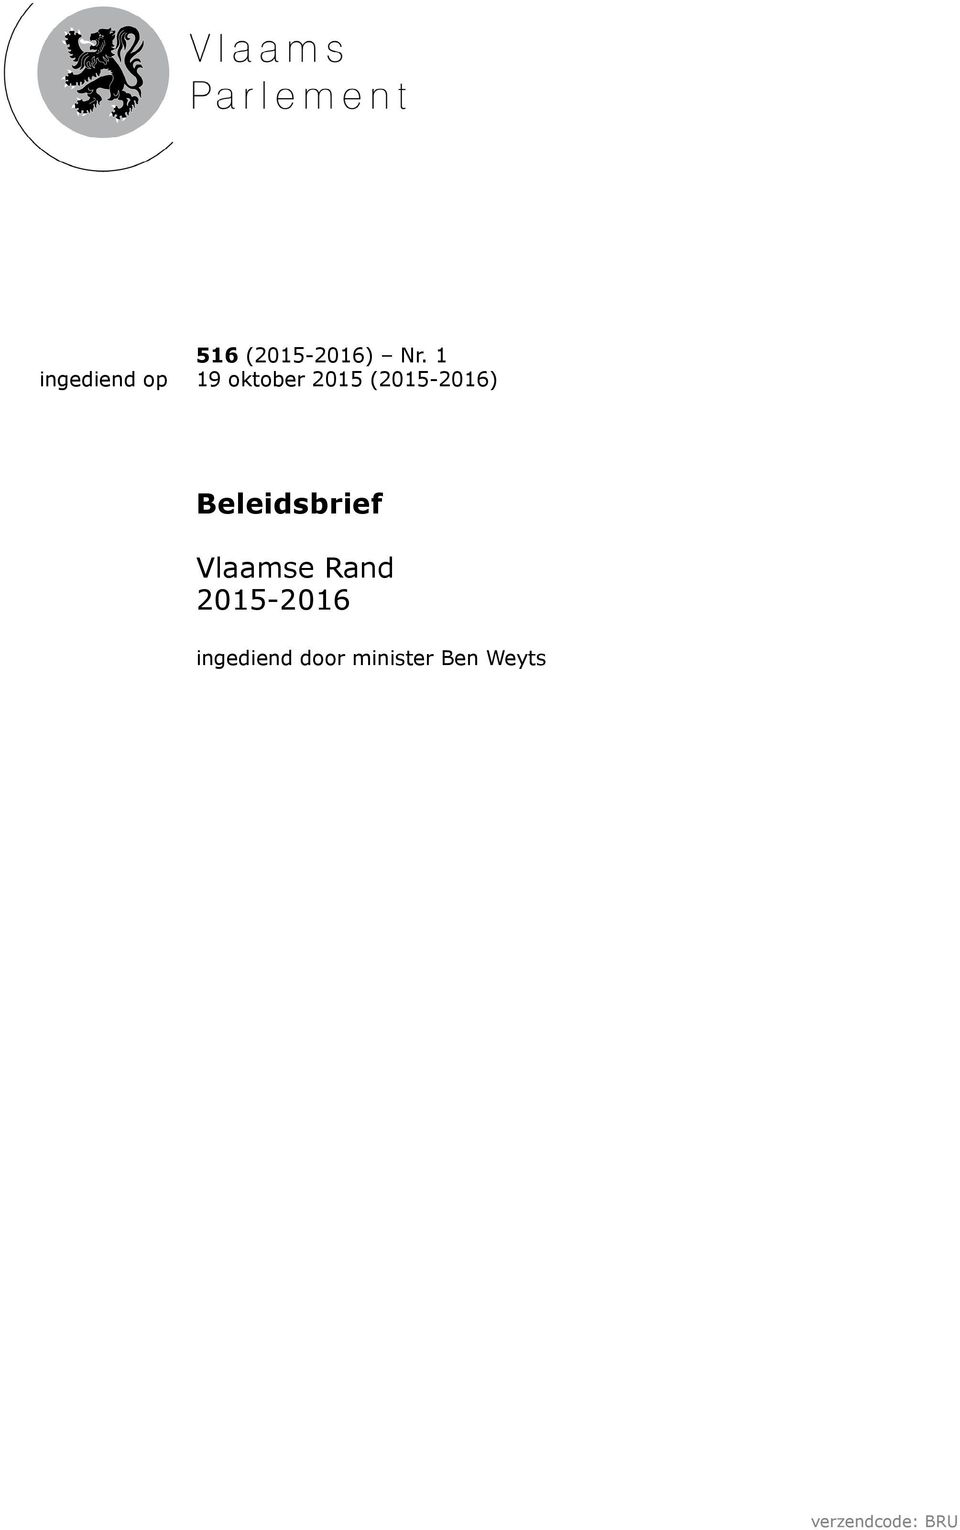 Beleidsbrief Vlaamse Rand 2015-2016